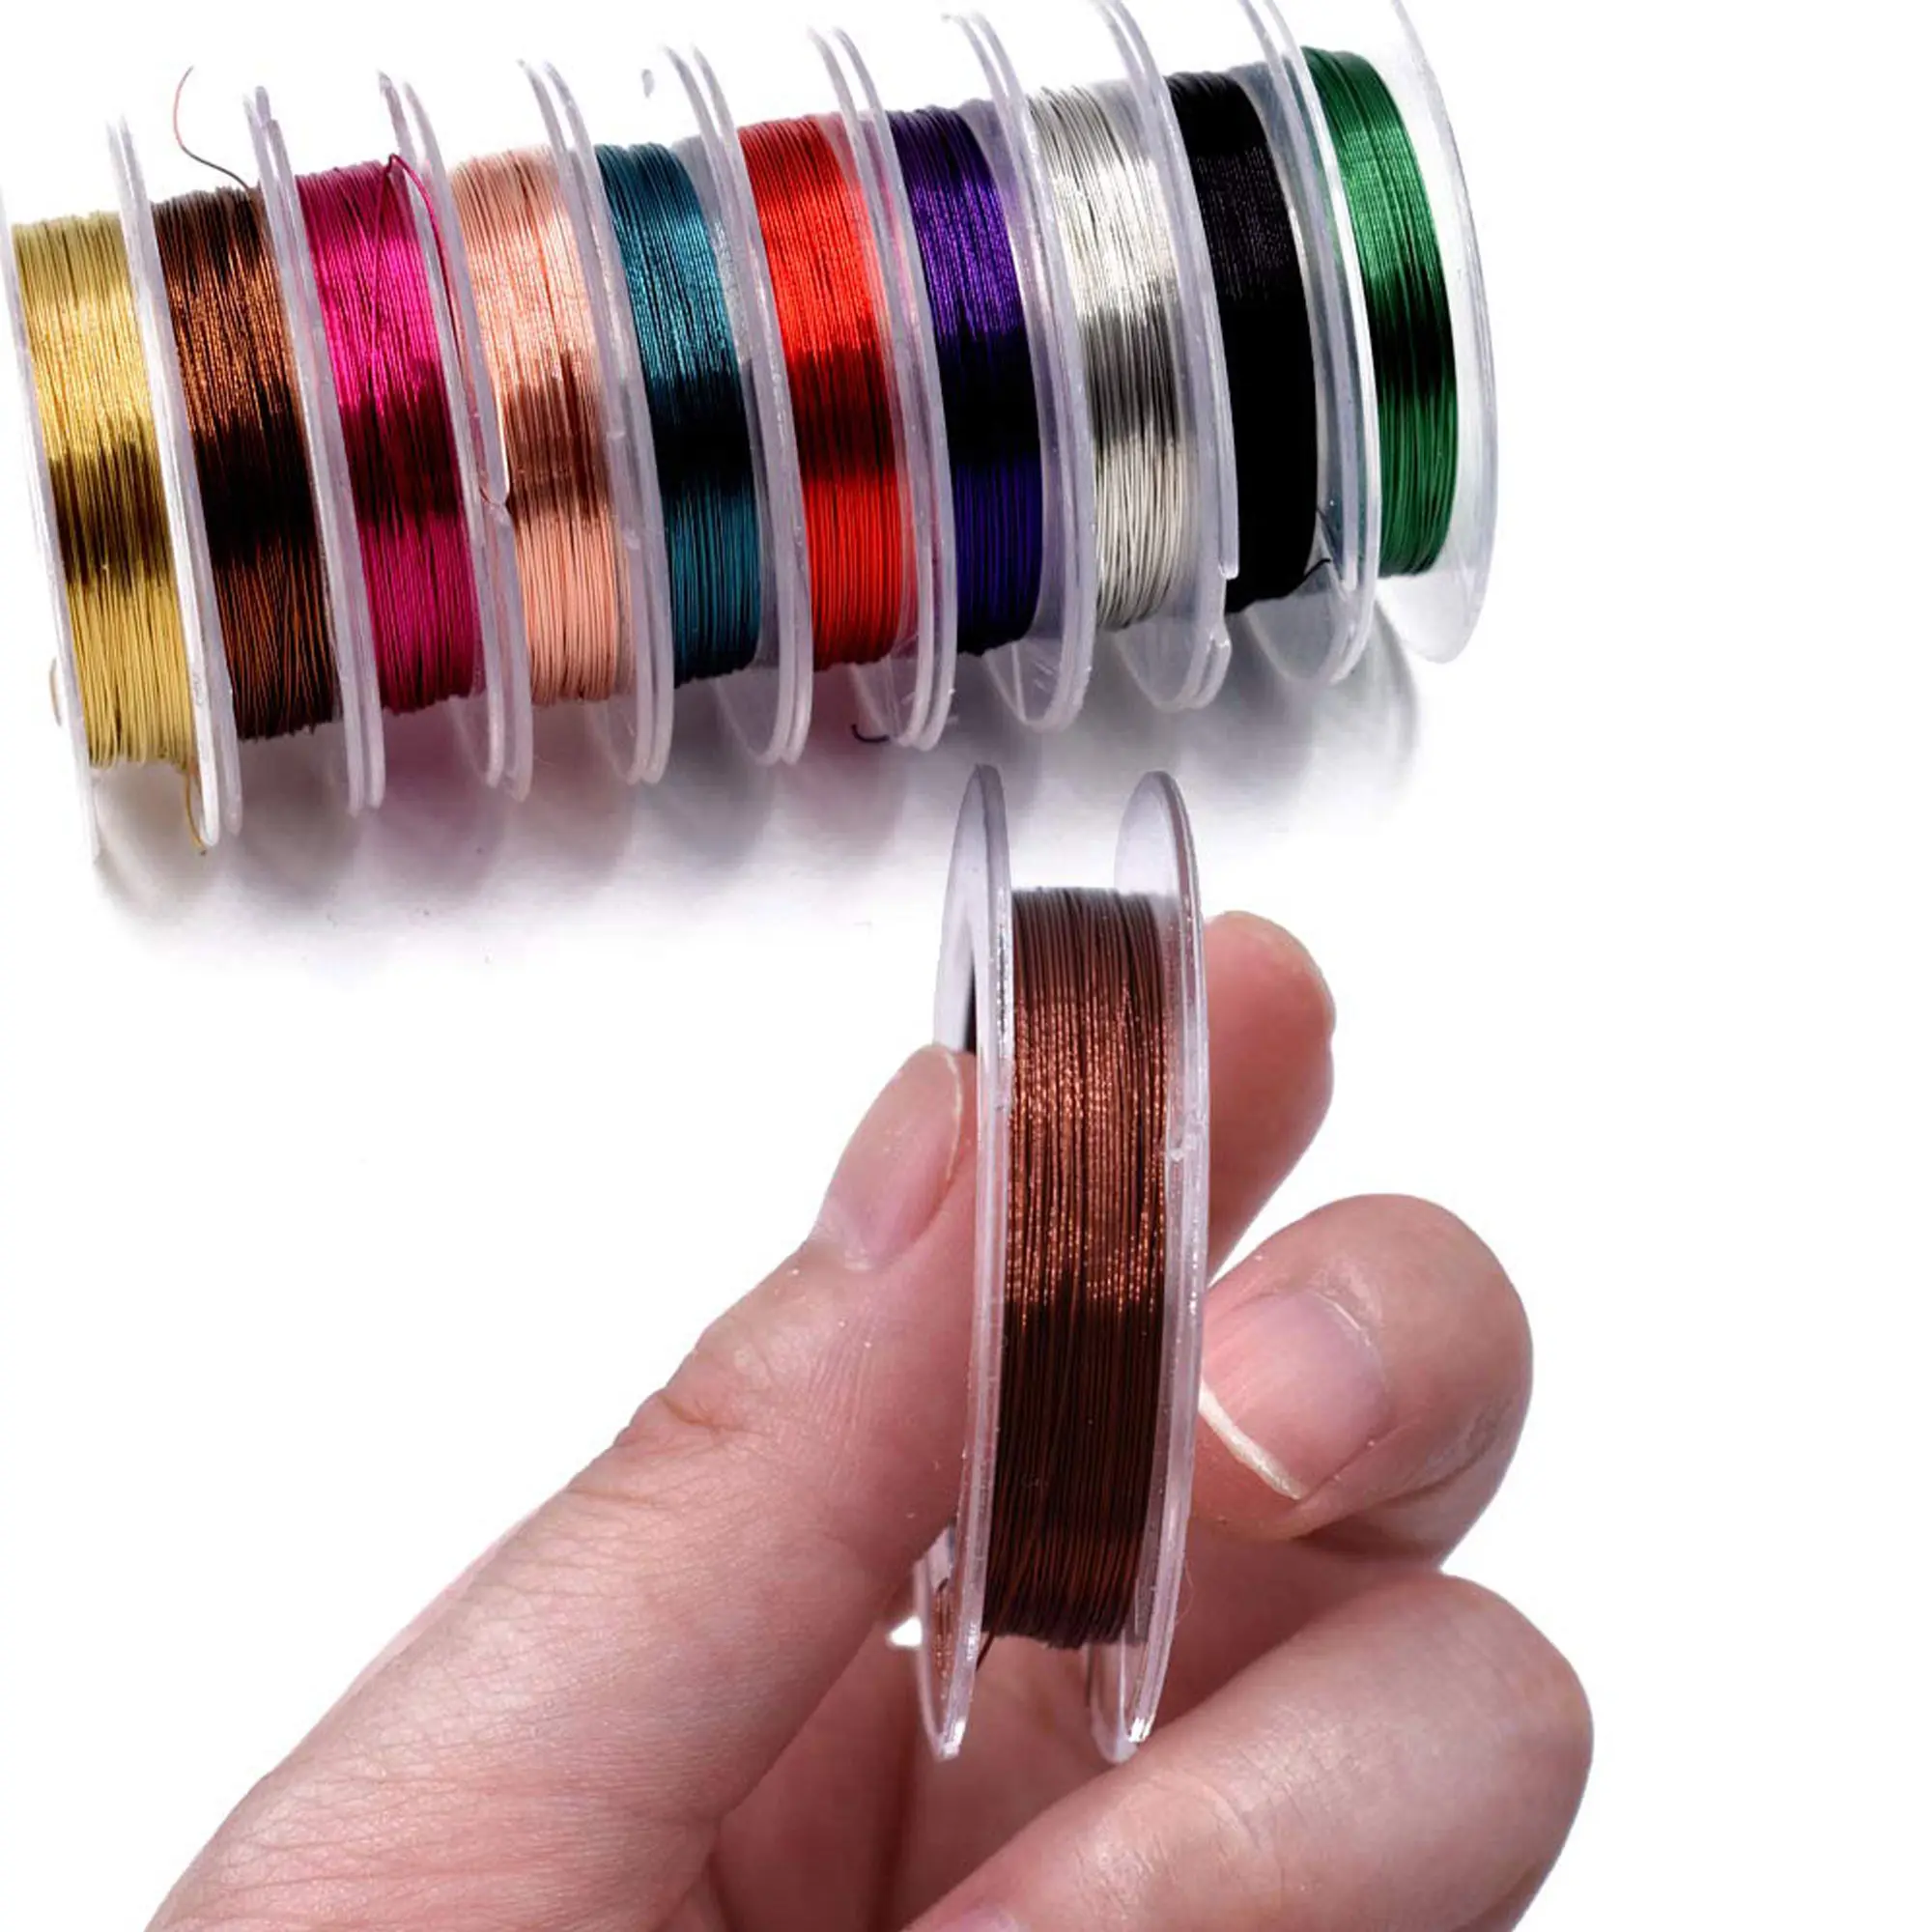 10 adet karışık renkler 0.3MM bakır tel sinek bağlama malzemeleri sinek balıkçılık için el yapımı malzemeler Larve Nymph flama